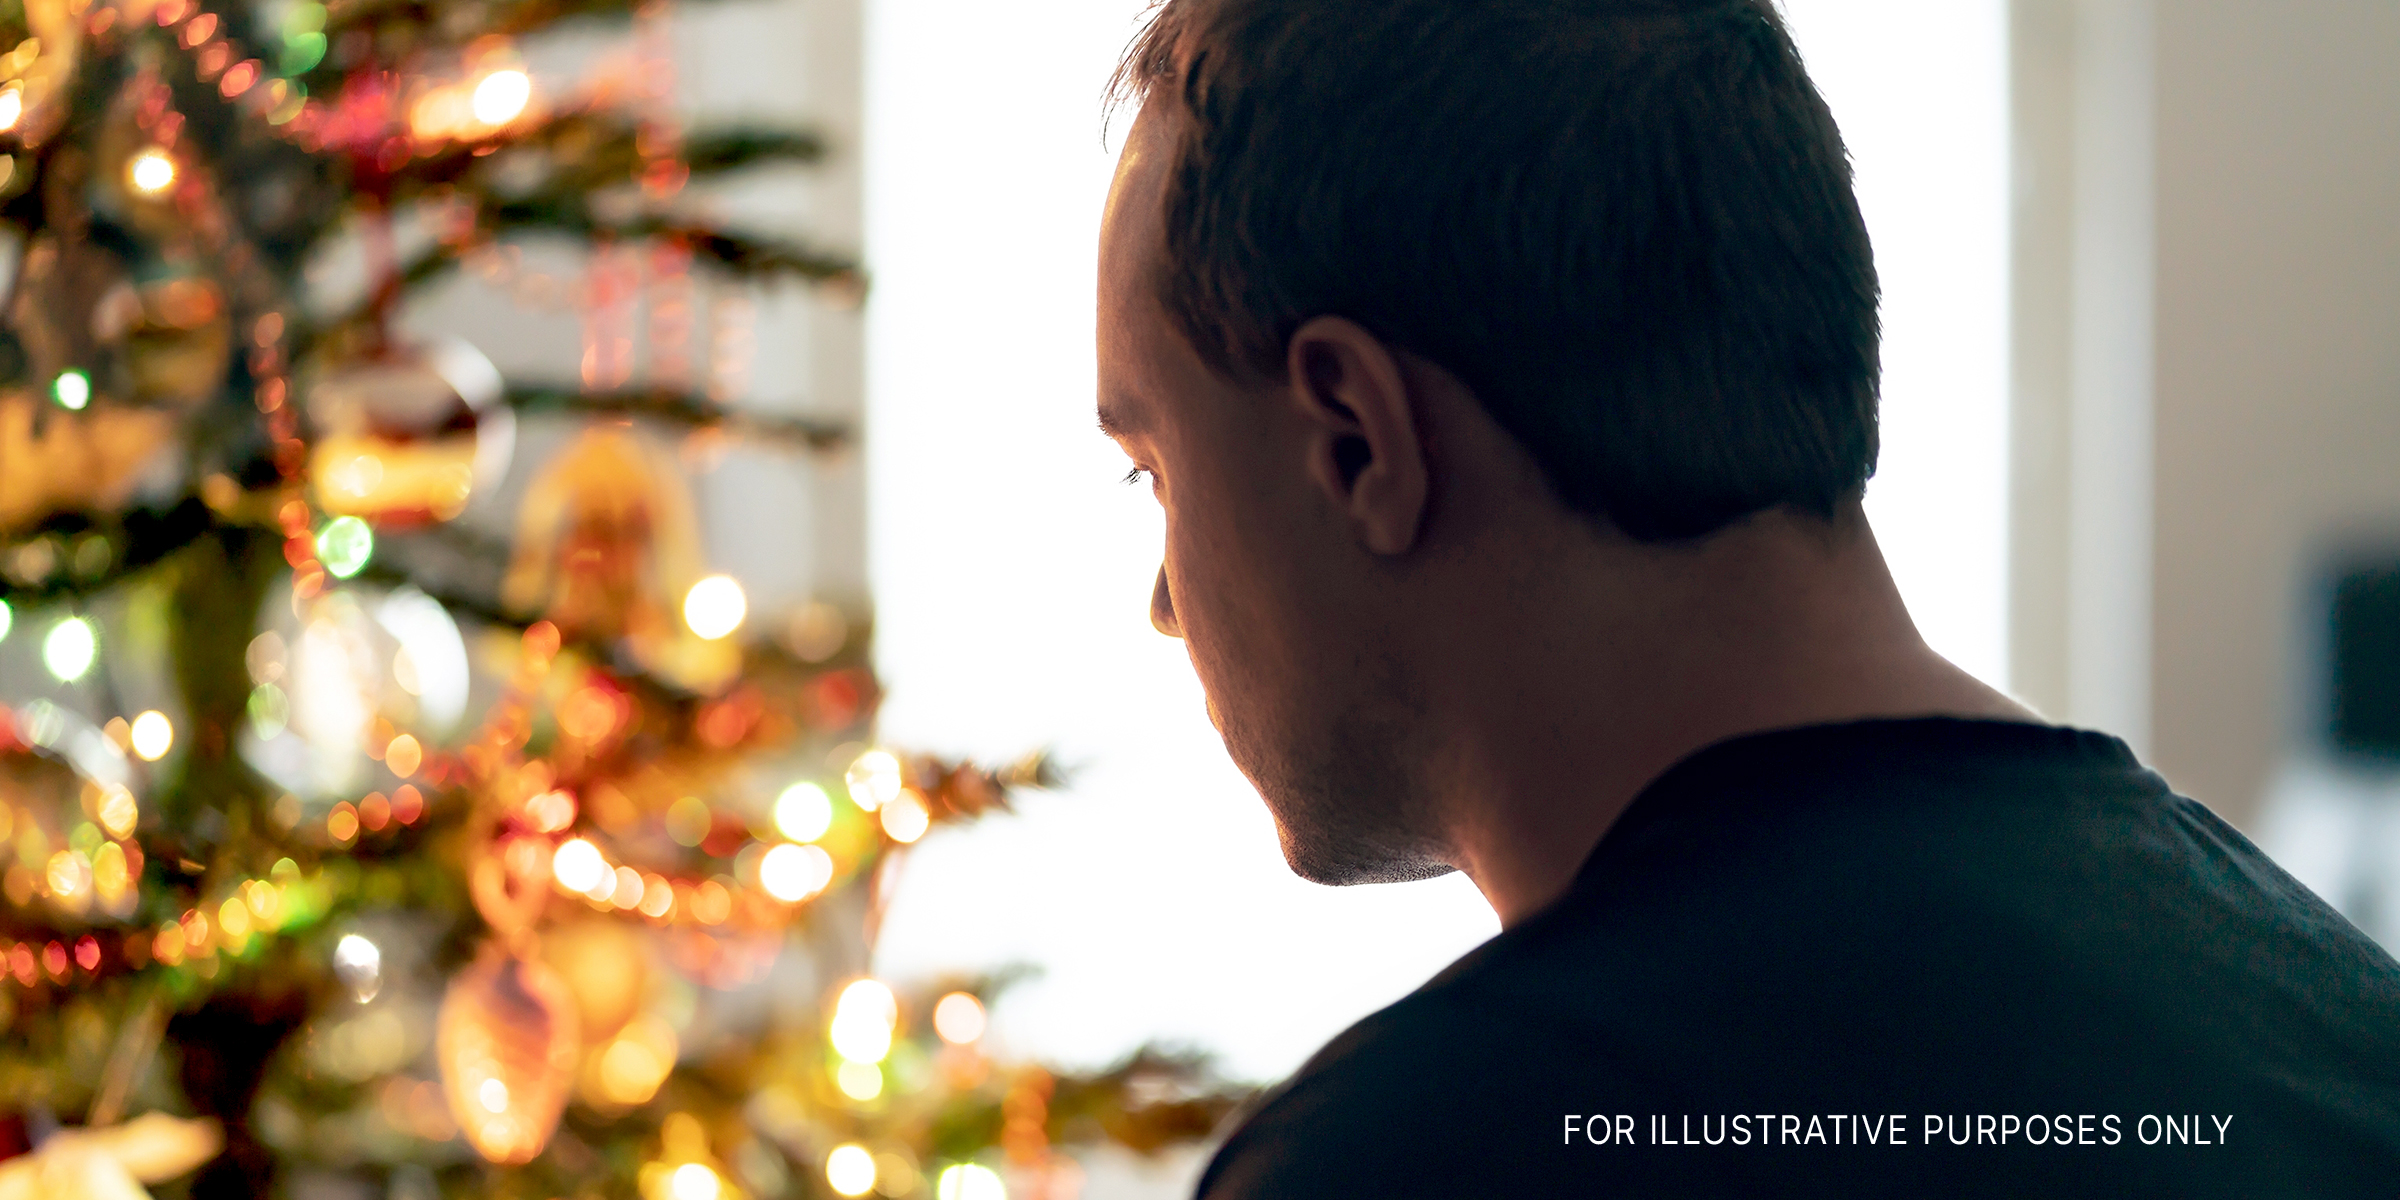 Mann starrt auf einen Weihnachtsbaum | Quelle: Shutterstock